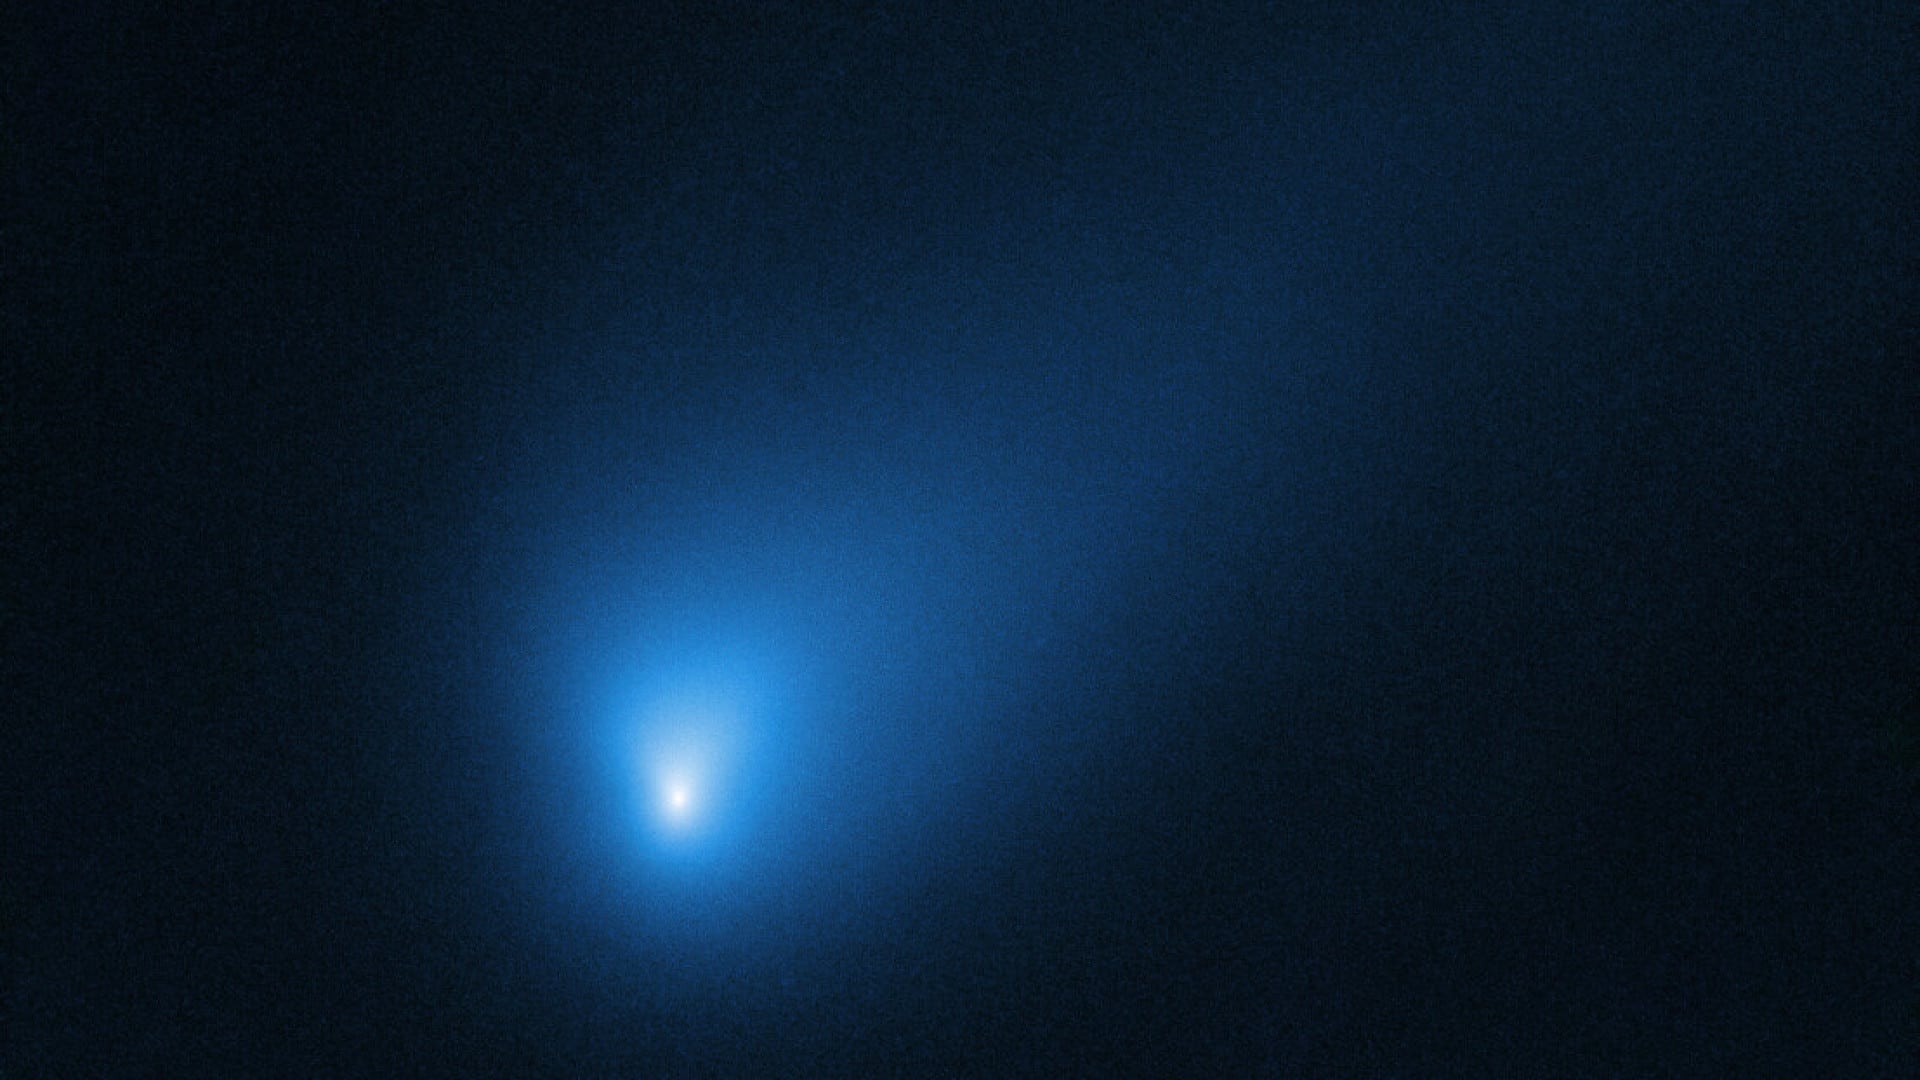 2I / Borisov: The interstellar comet is still very original